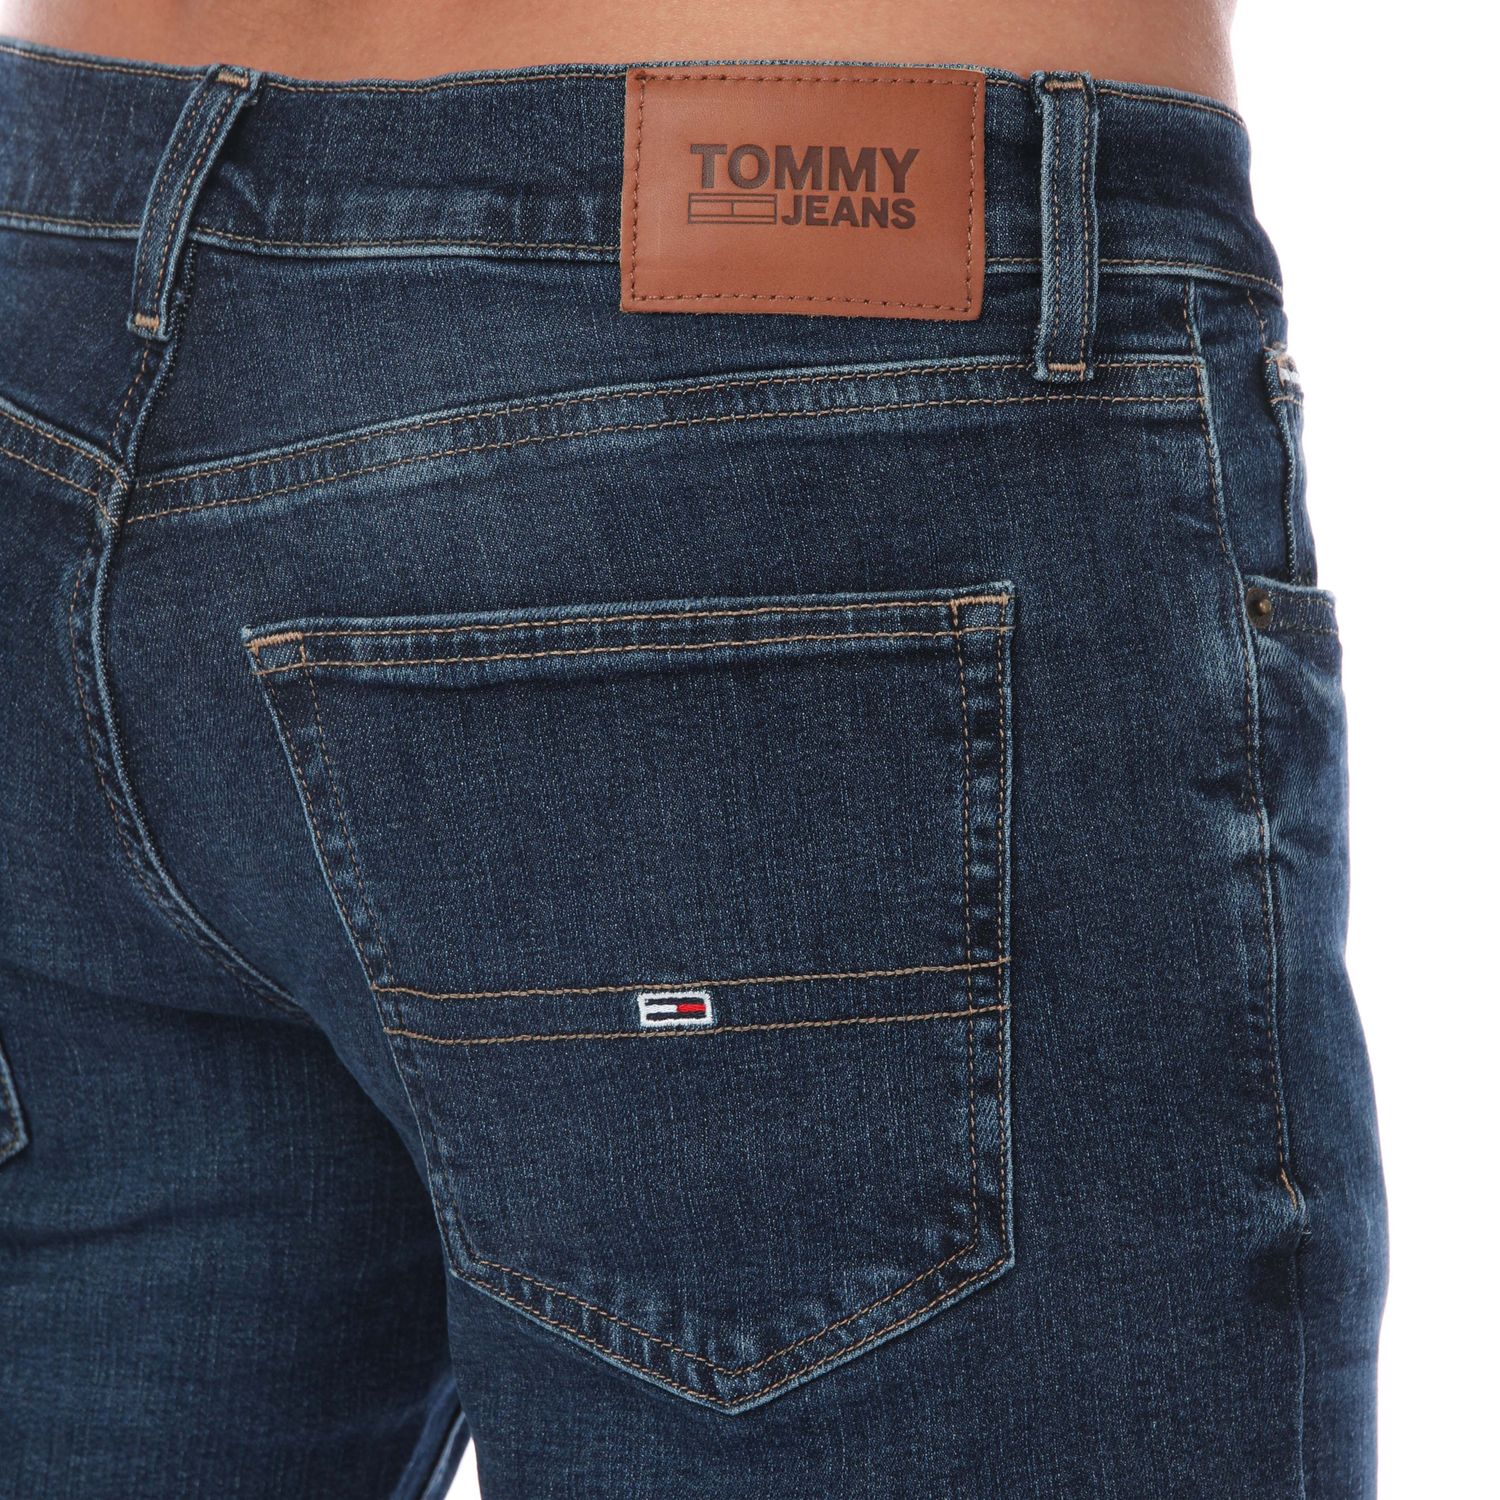 Dark - Jeans Fit Label Get Blue Mens Hilfiger Tommy Scanton Slim The